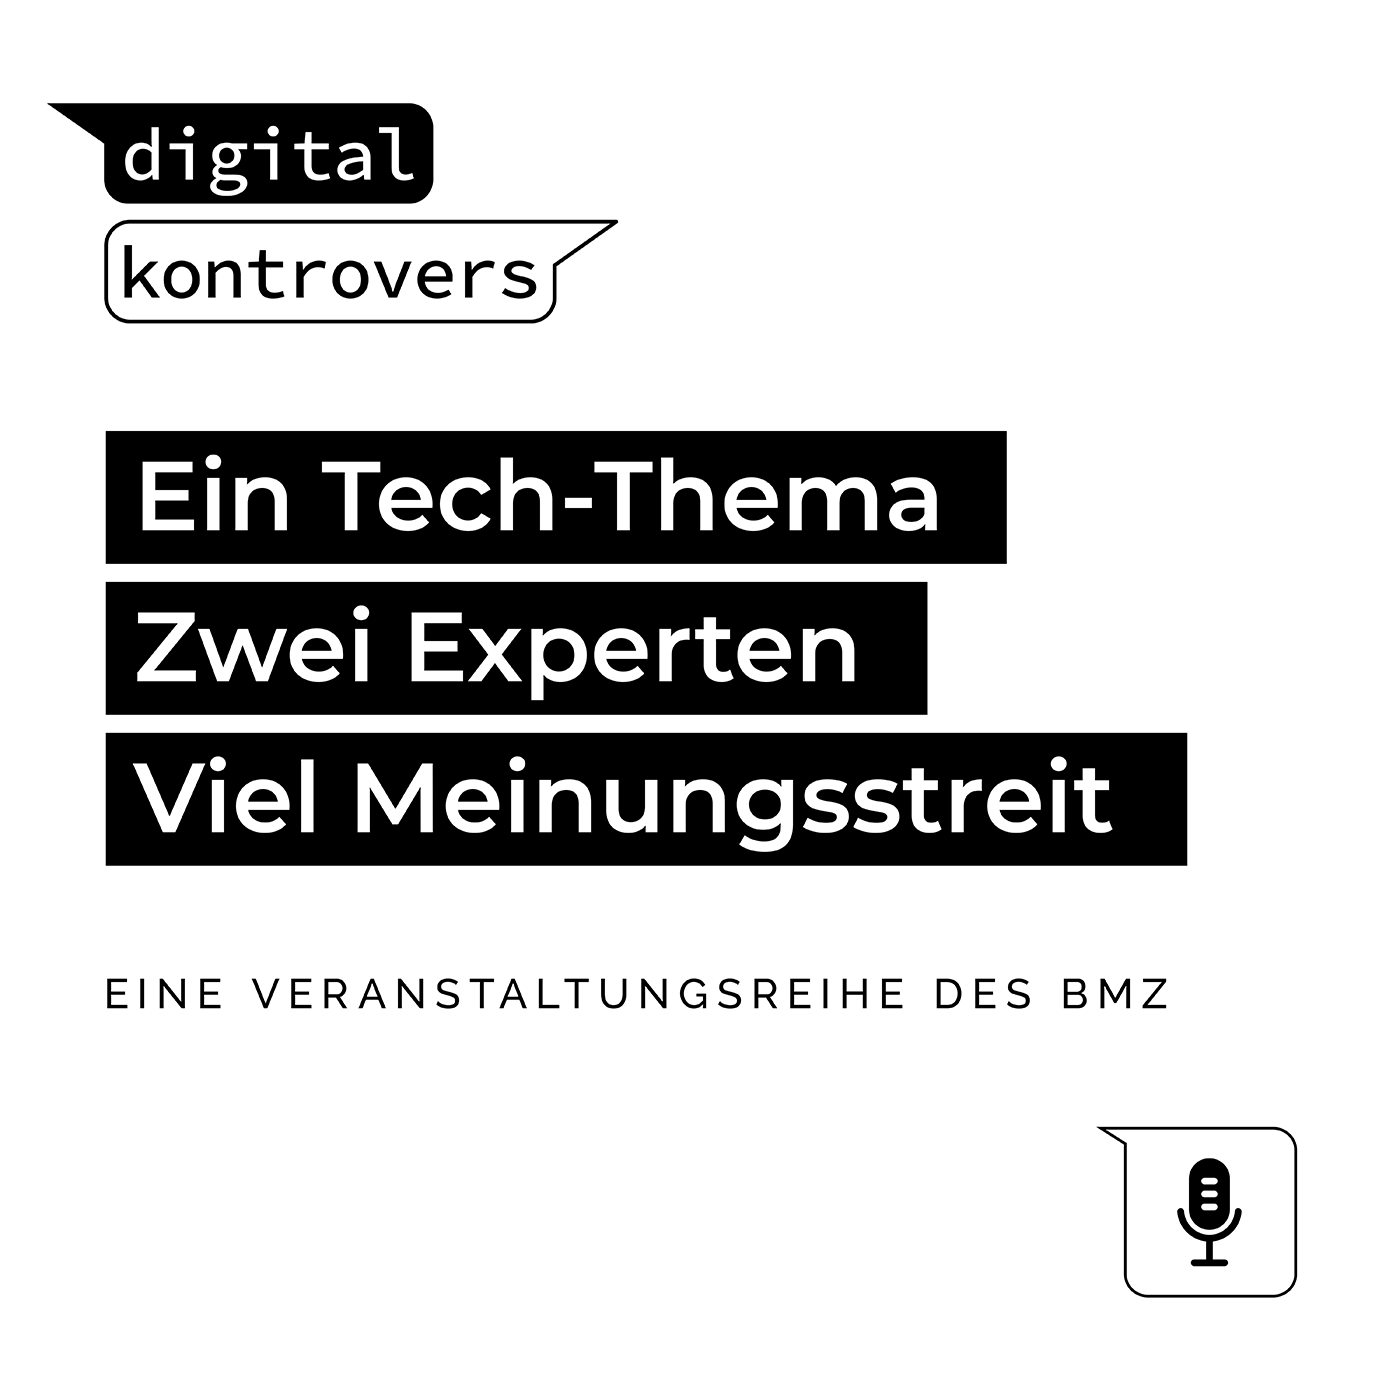 Cover des Podcasts "digital kontrovers" des Bundesministerium für wirtschaftliche Zusammenarbeit und Entwicklung (BMZ)